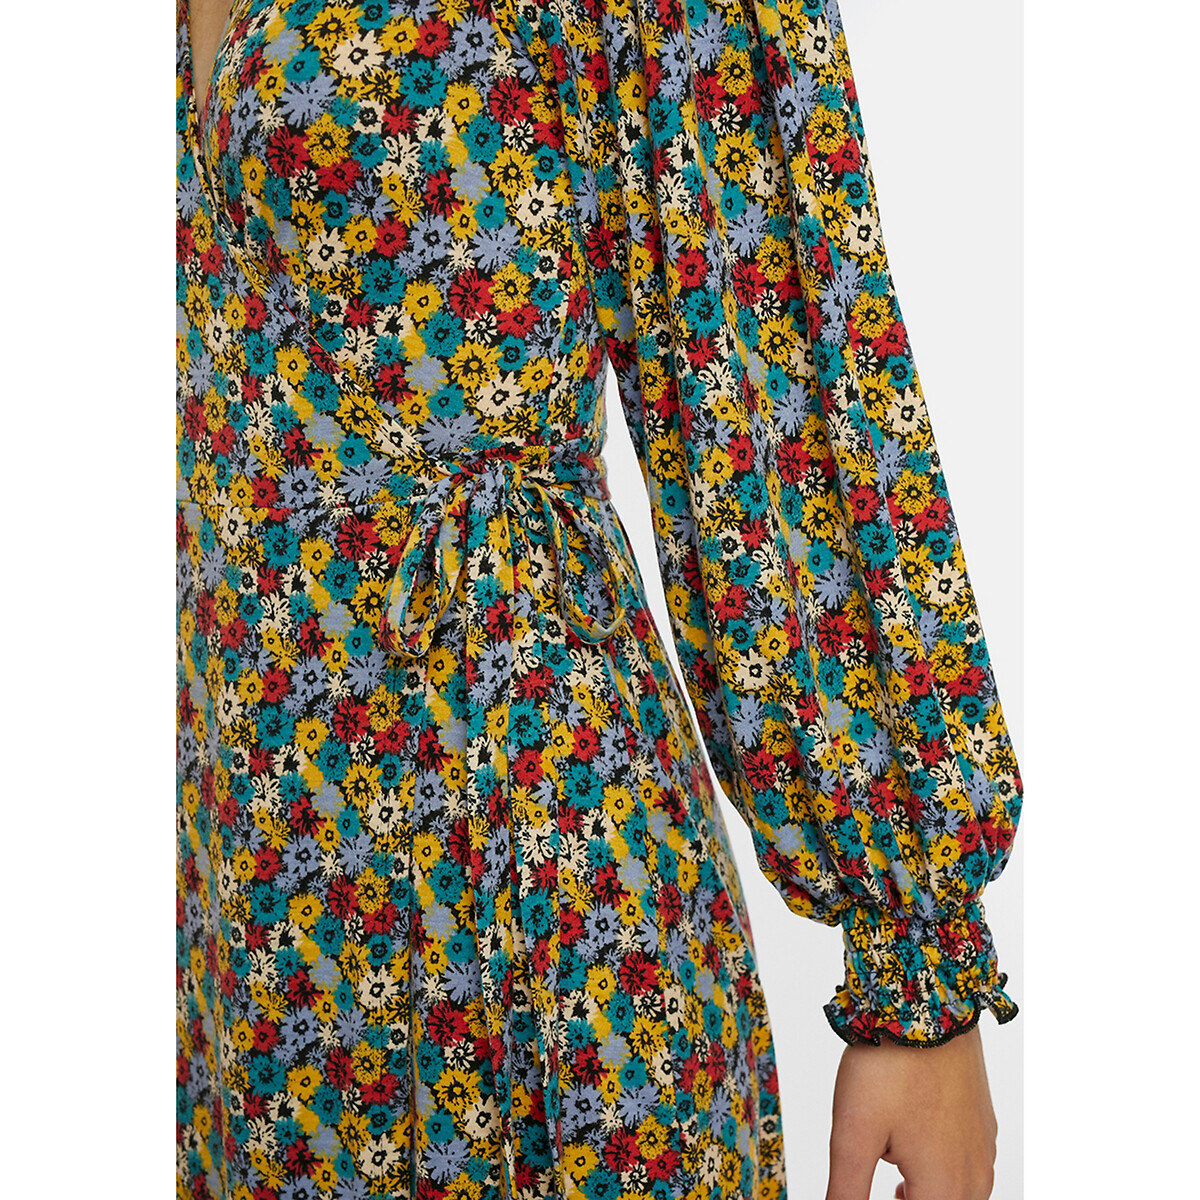 Платье La Redoute С цветочным узором длинные рукава V-образный вырез XL разноцветный, размер XL - фото 5